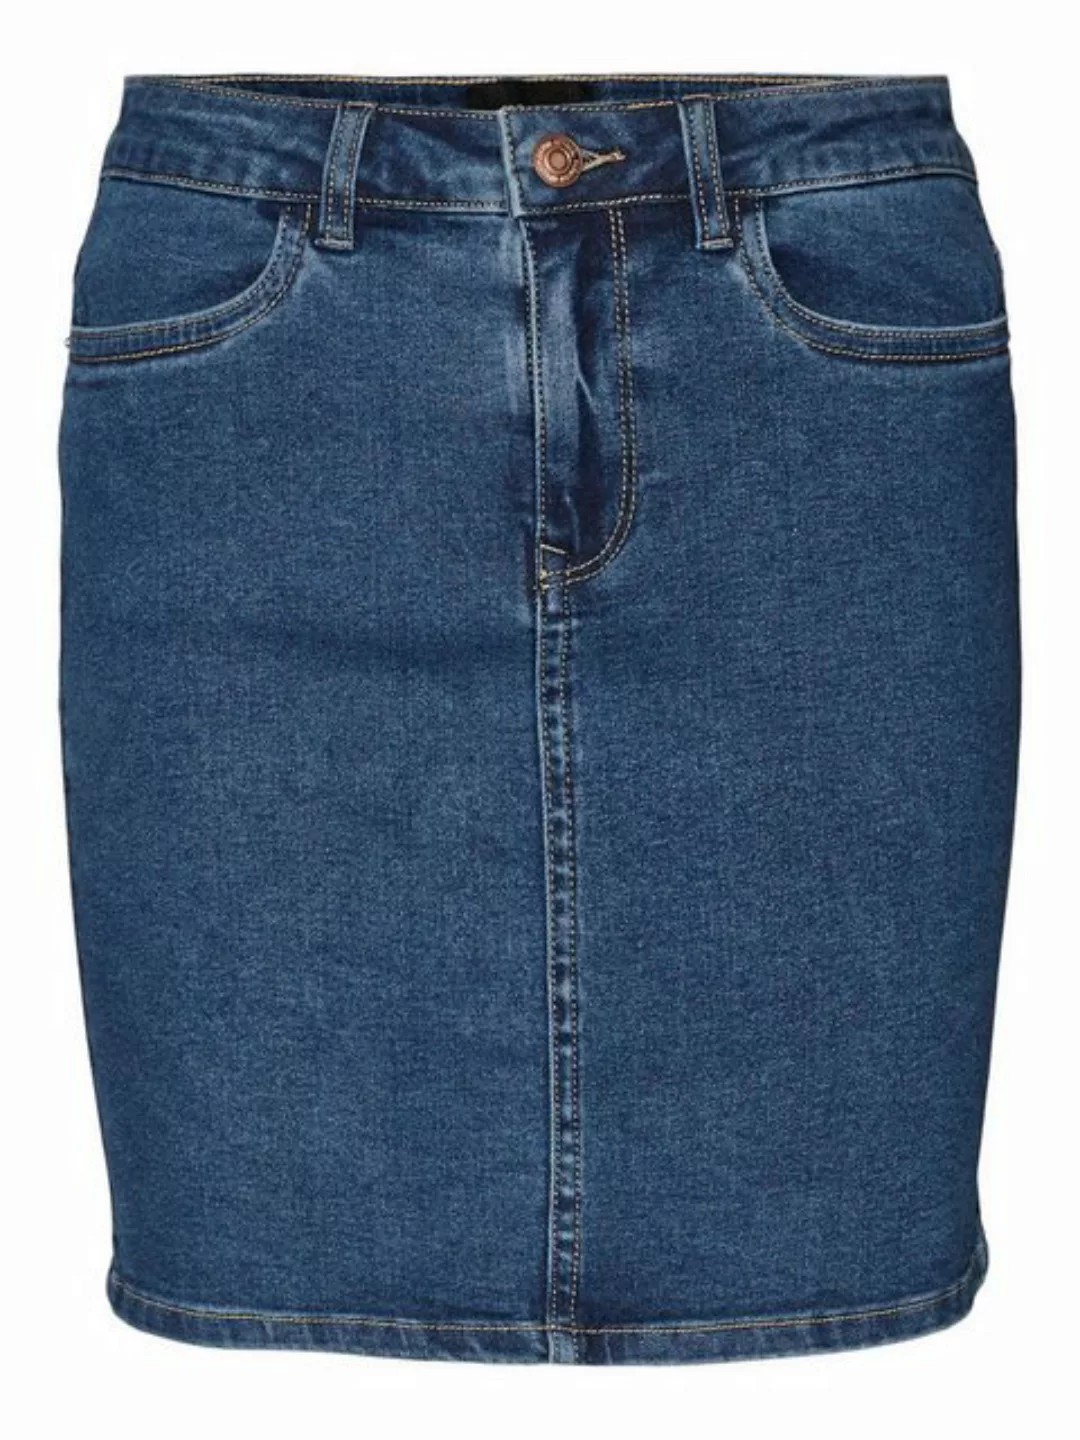 Vero Moda Sommerrock Denim Jeansrock hohe Taille 7566 in Blau günstig online kaufen